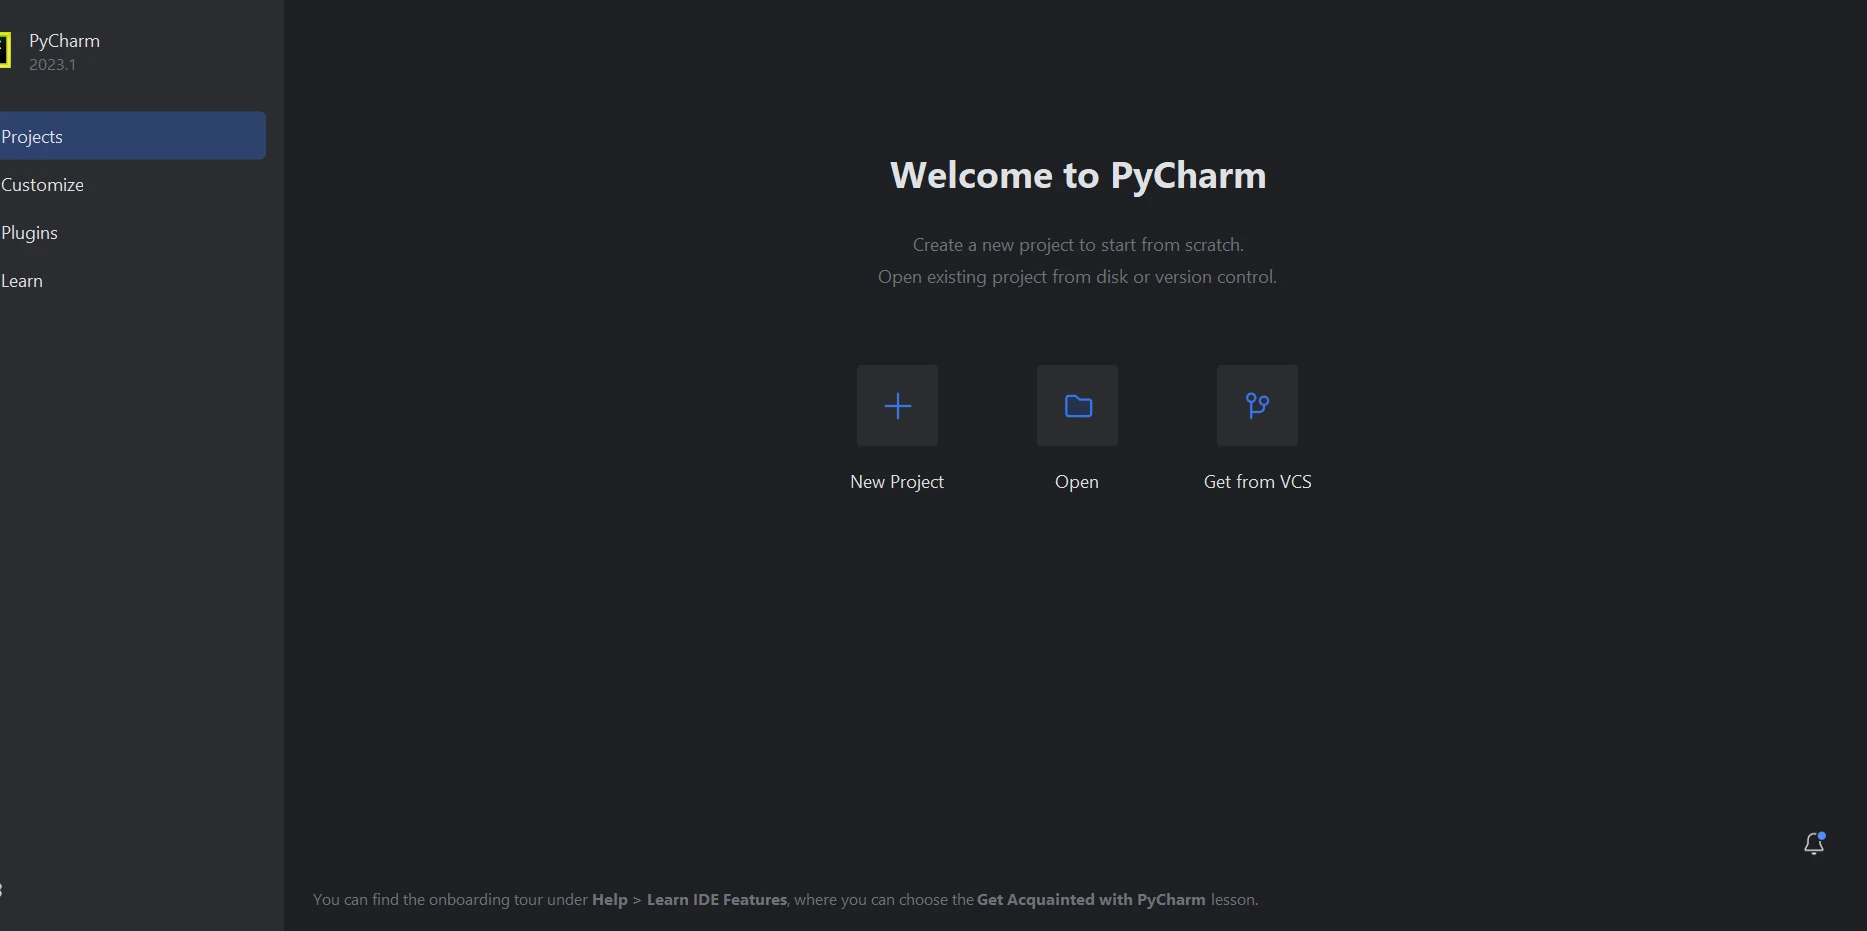 Cómo analizar un archivo PDF en Python: Figura 1 - La pantalla de bienvenida de PyCharm.